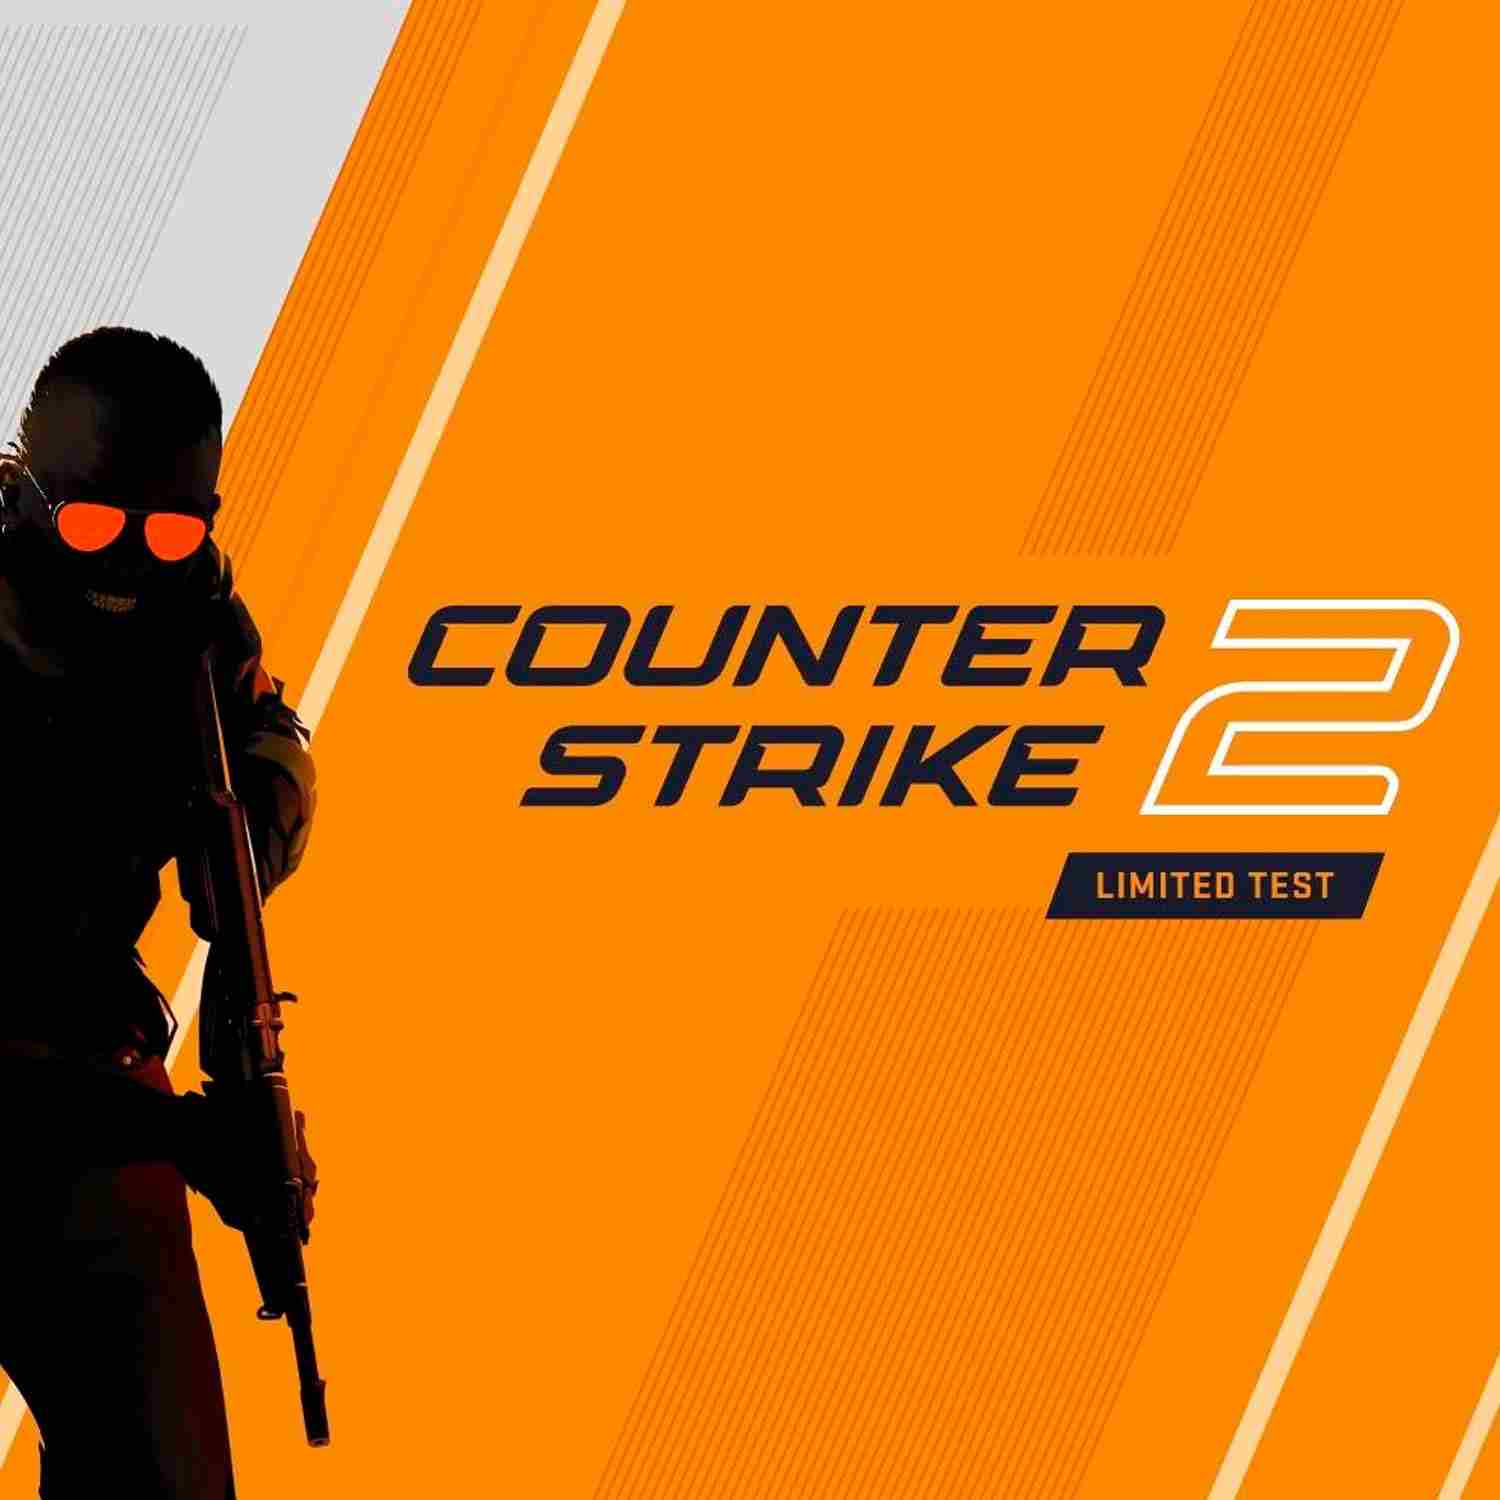 Aparece el primer cheat de Counter-Strike 2